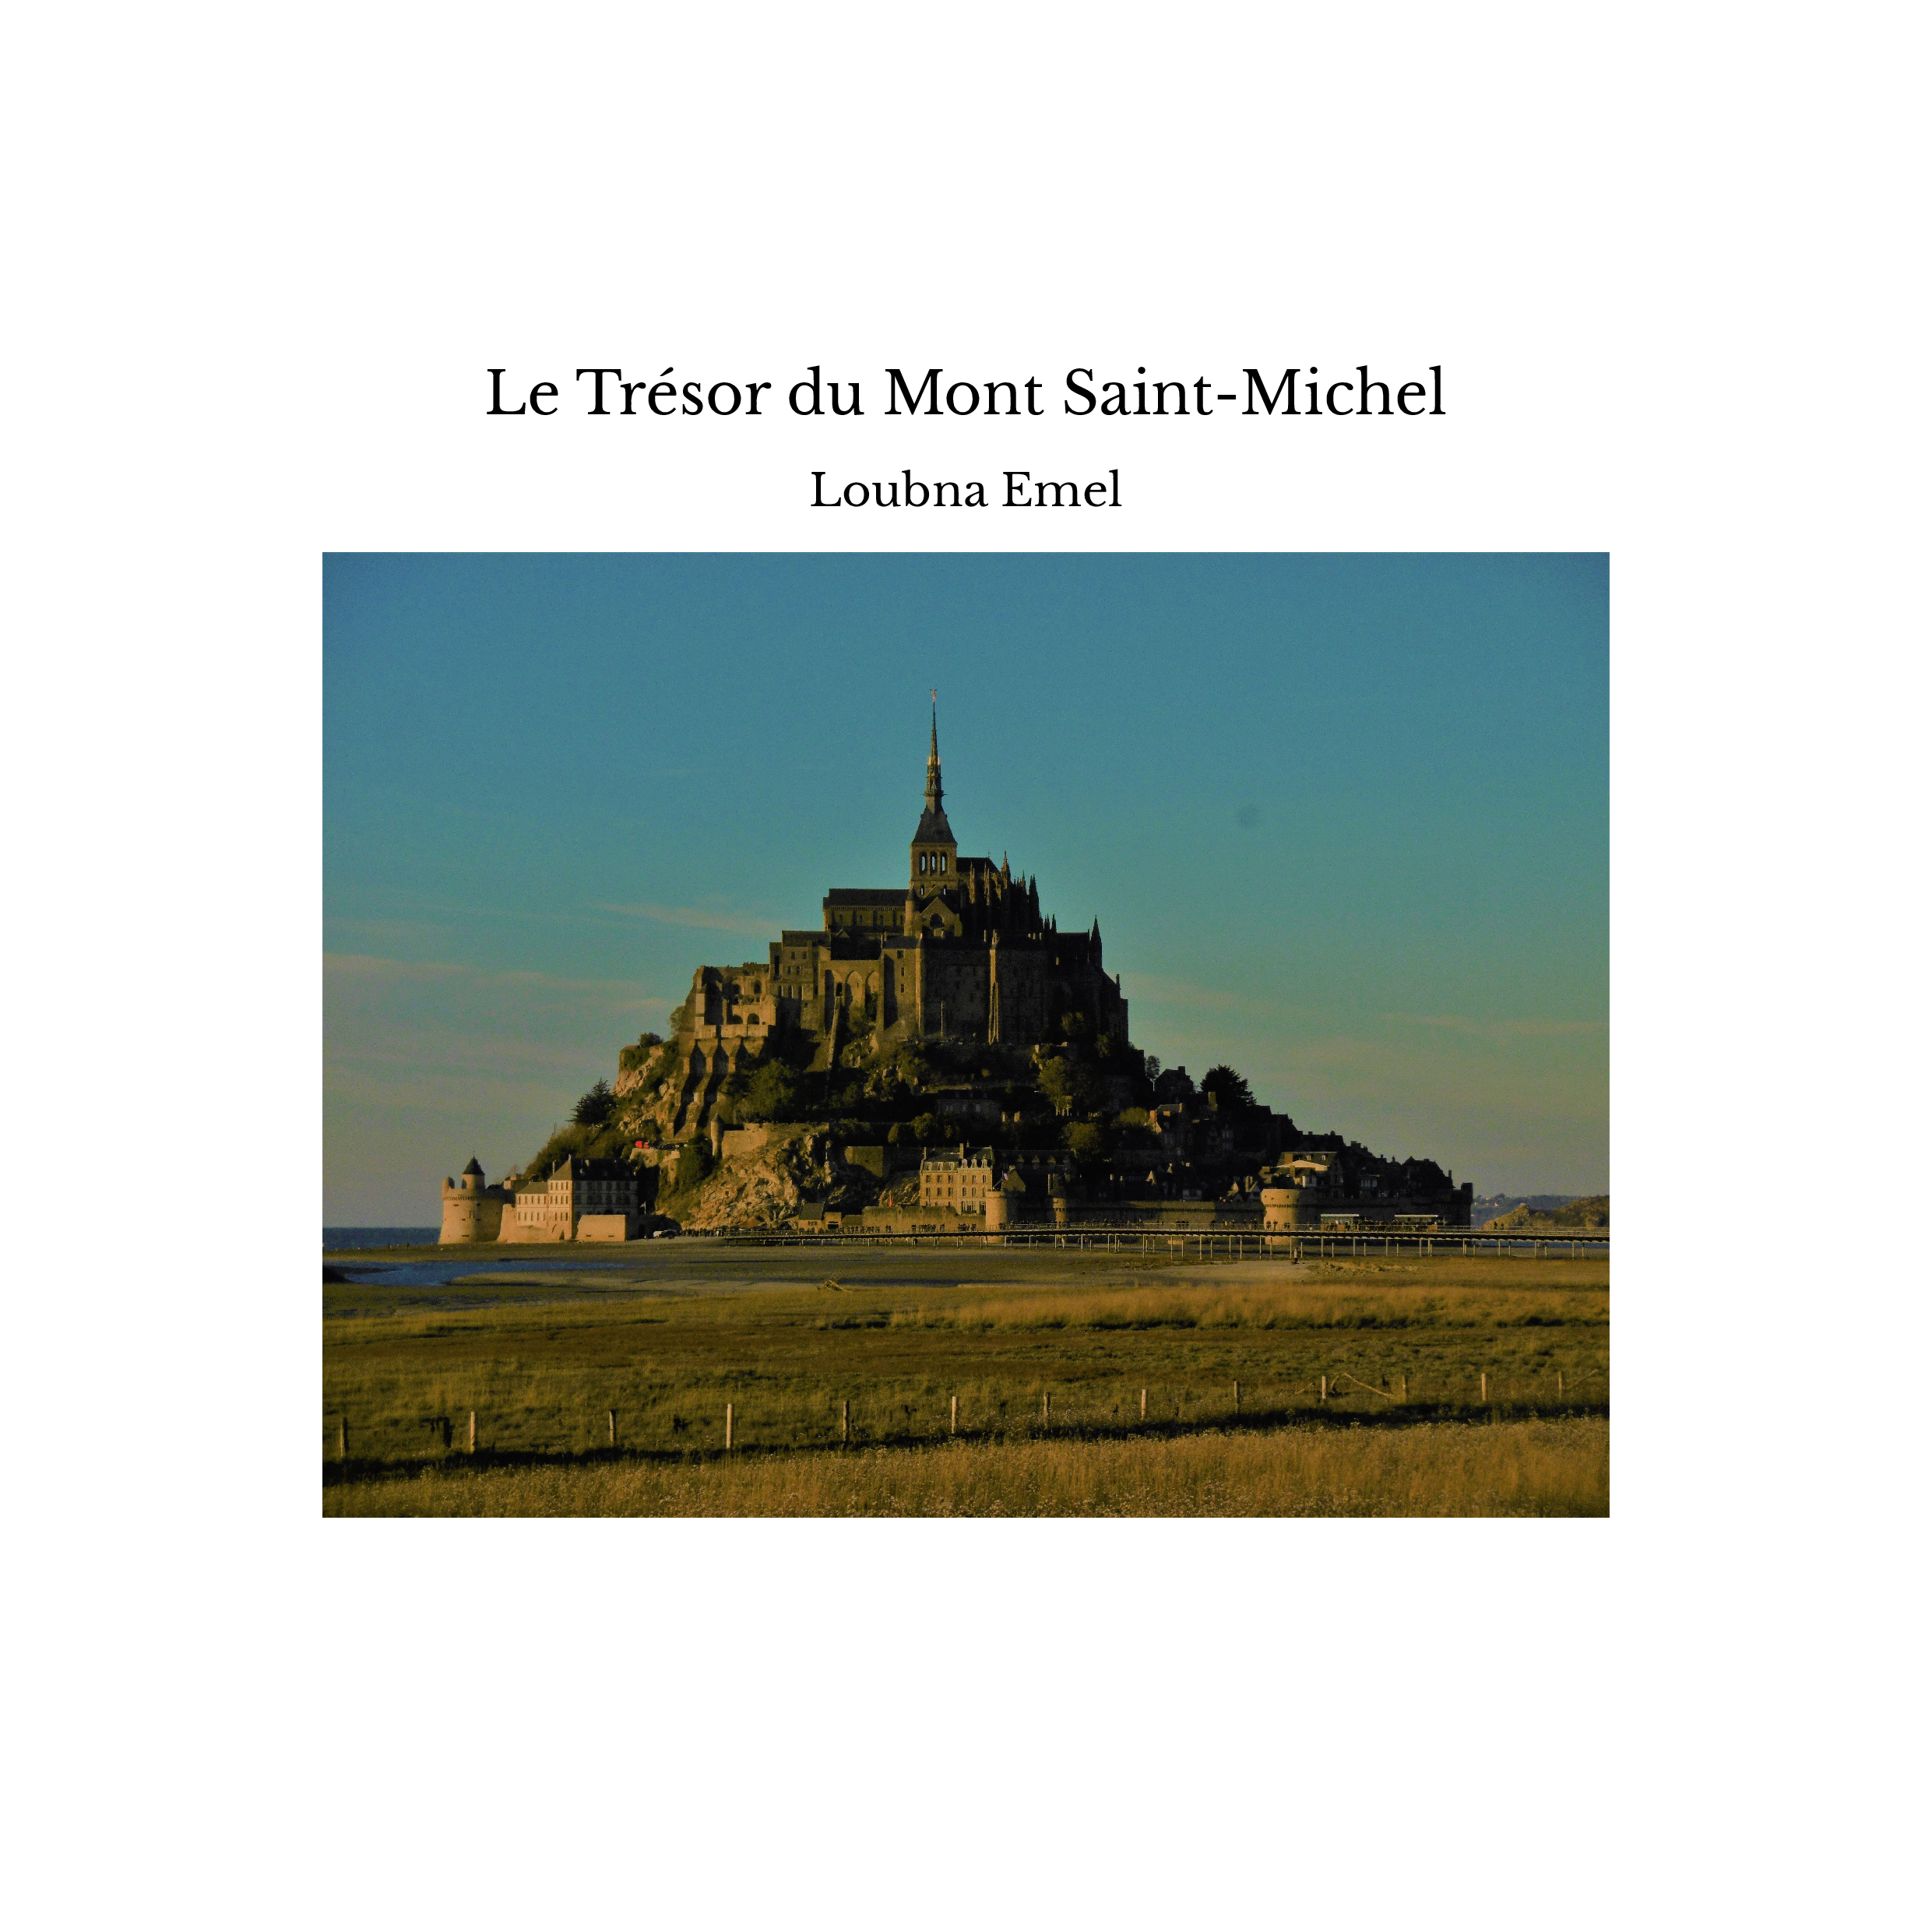 Le Trésor du Mont Saint-Michel